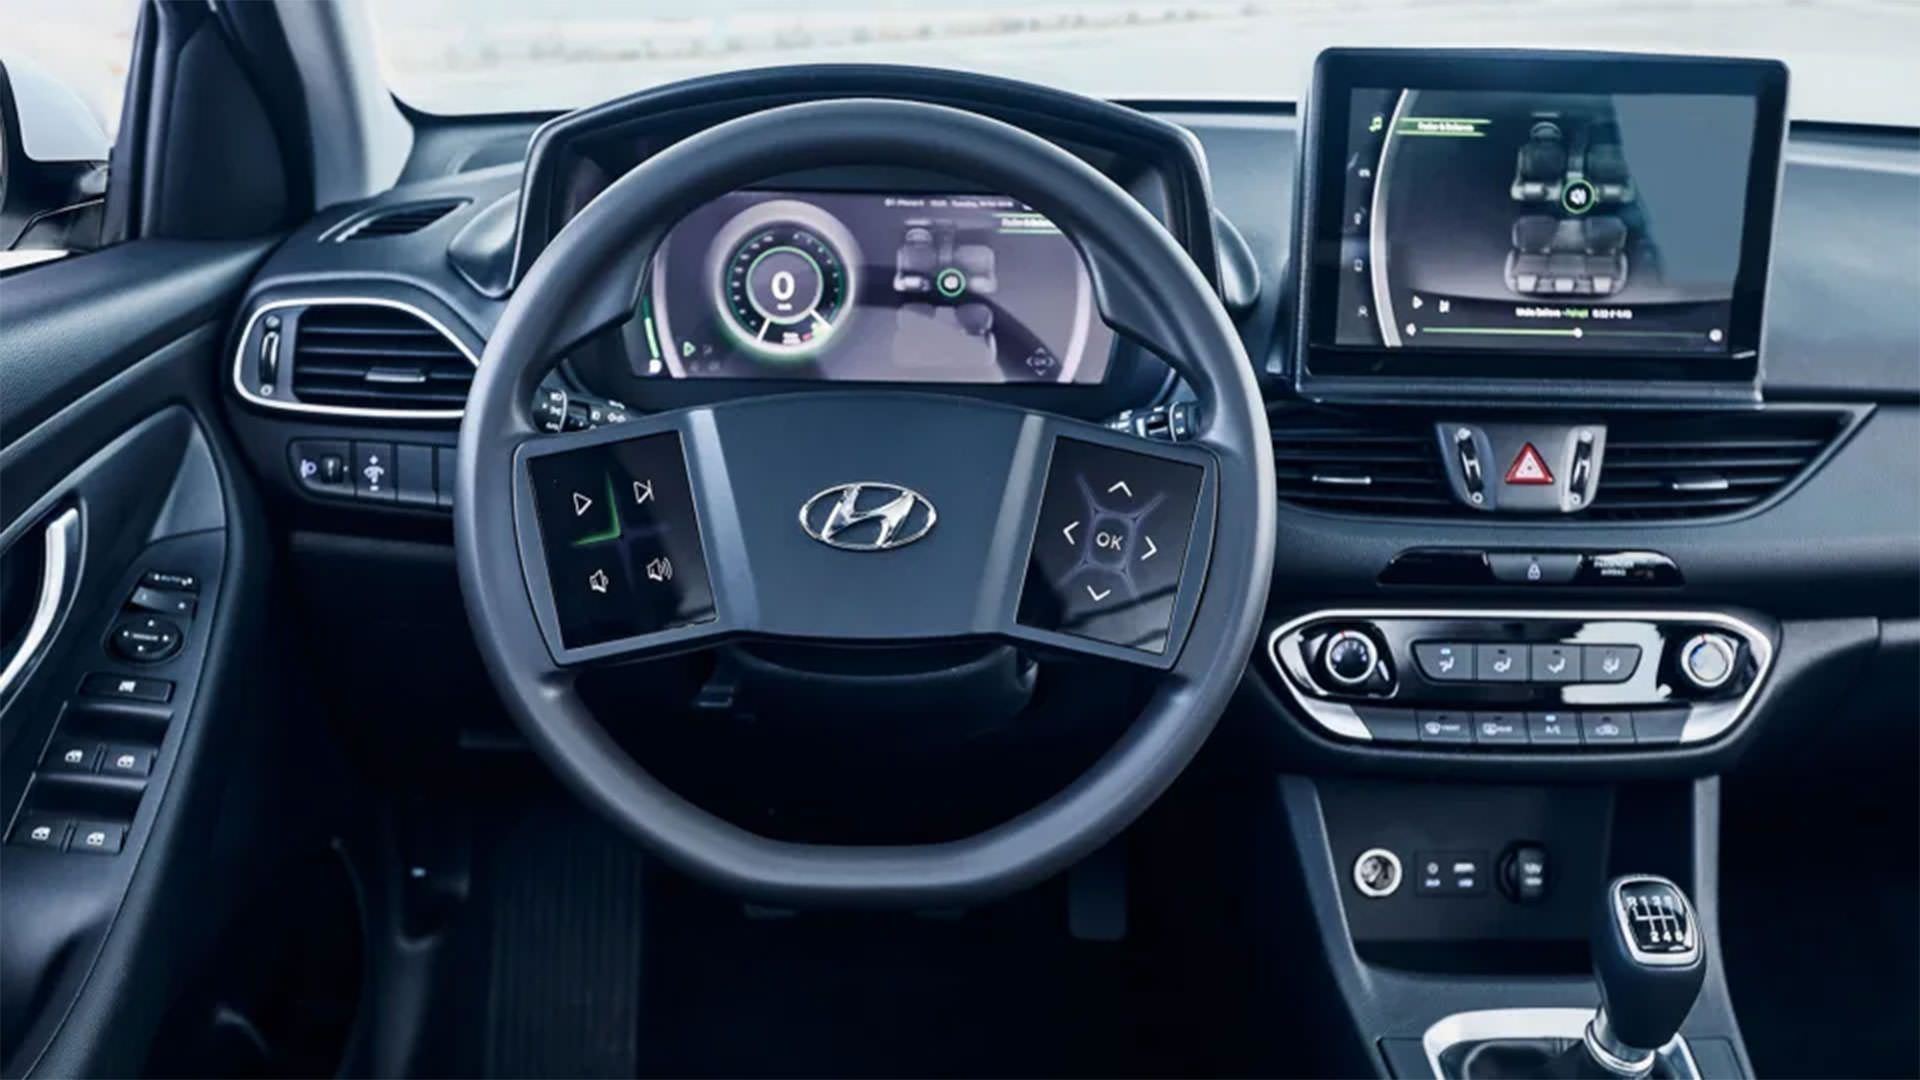 غربیلک مجهز به نمایشگر وسط فرمان هیوندای / Hyundai Steering Display